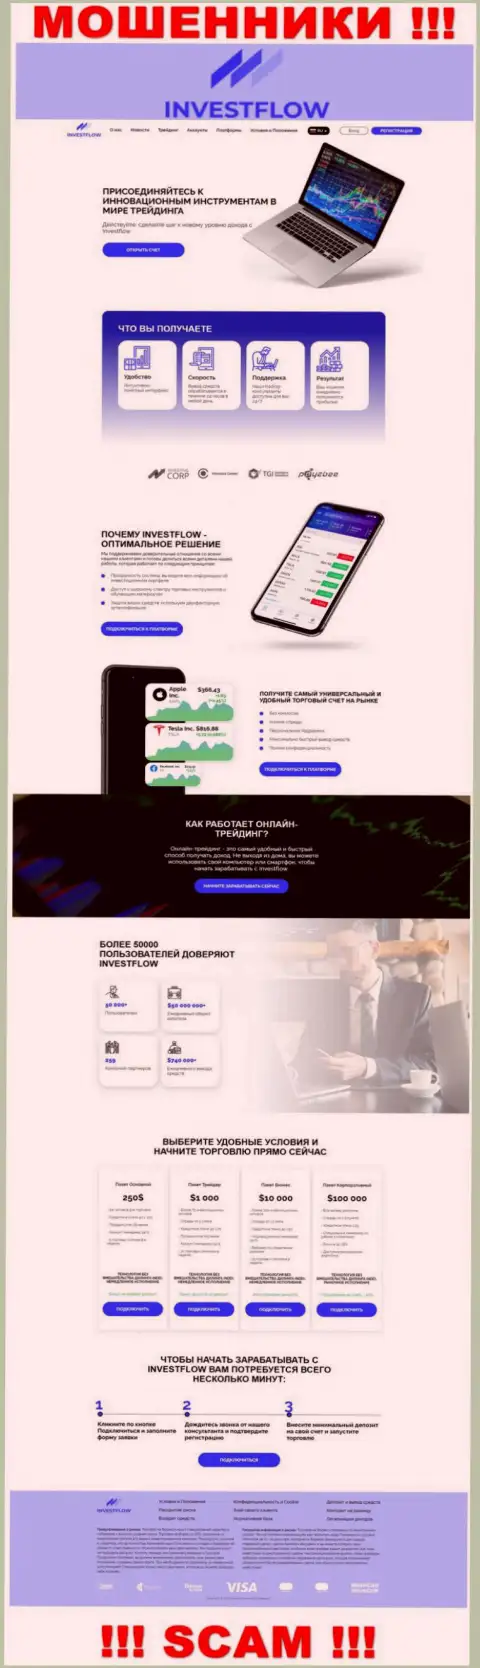 Скриншот официального web-портала ИнвестФлоу - Invest-Flow Io